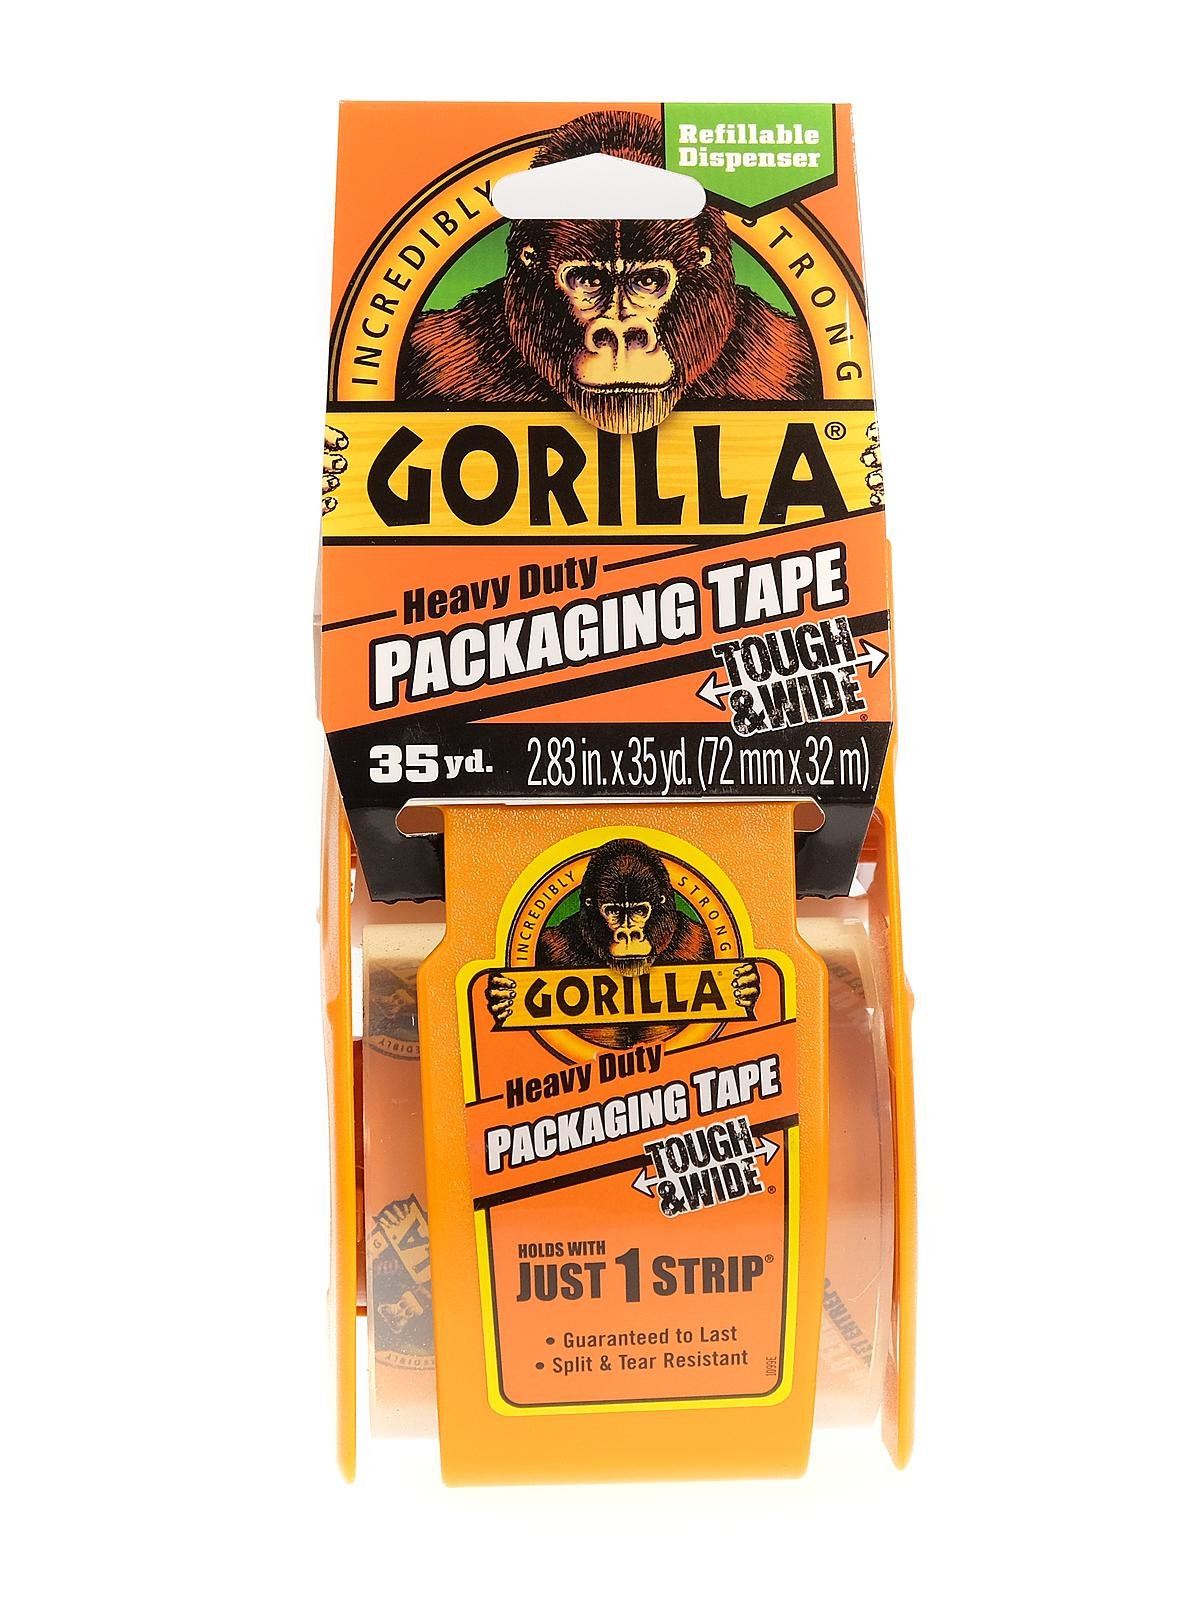 Gorilla packing tape 